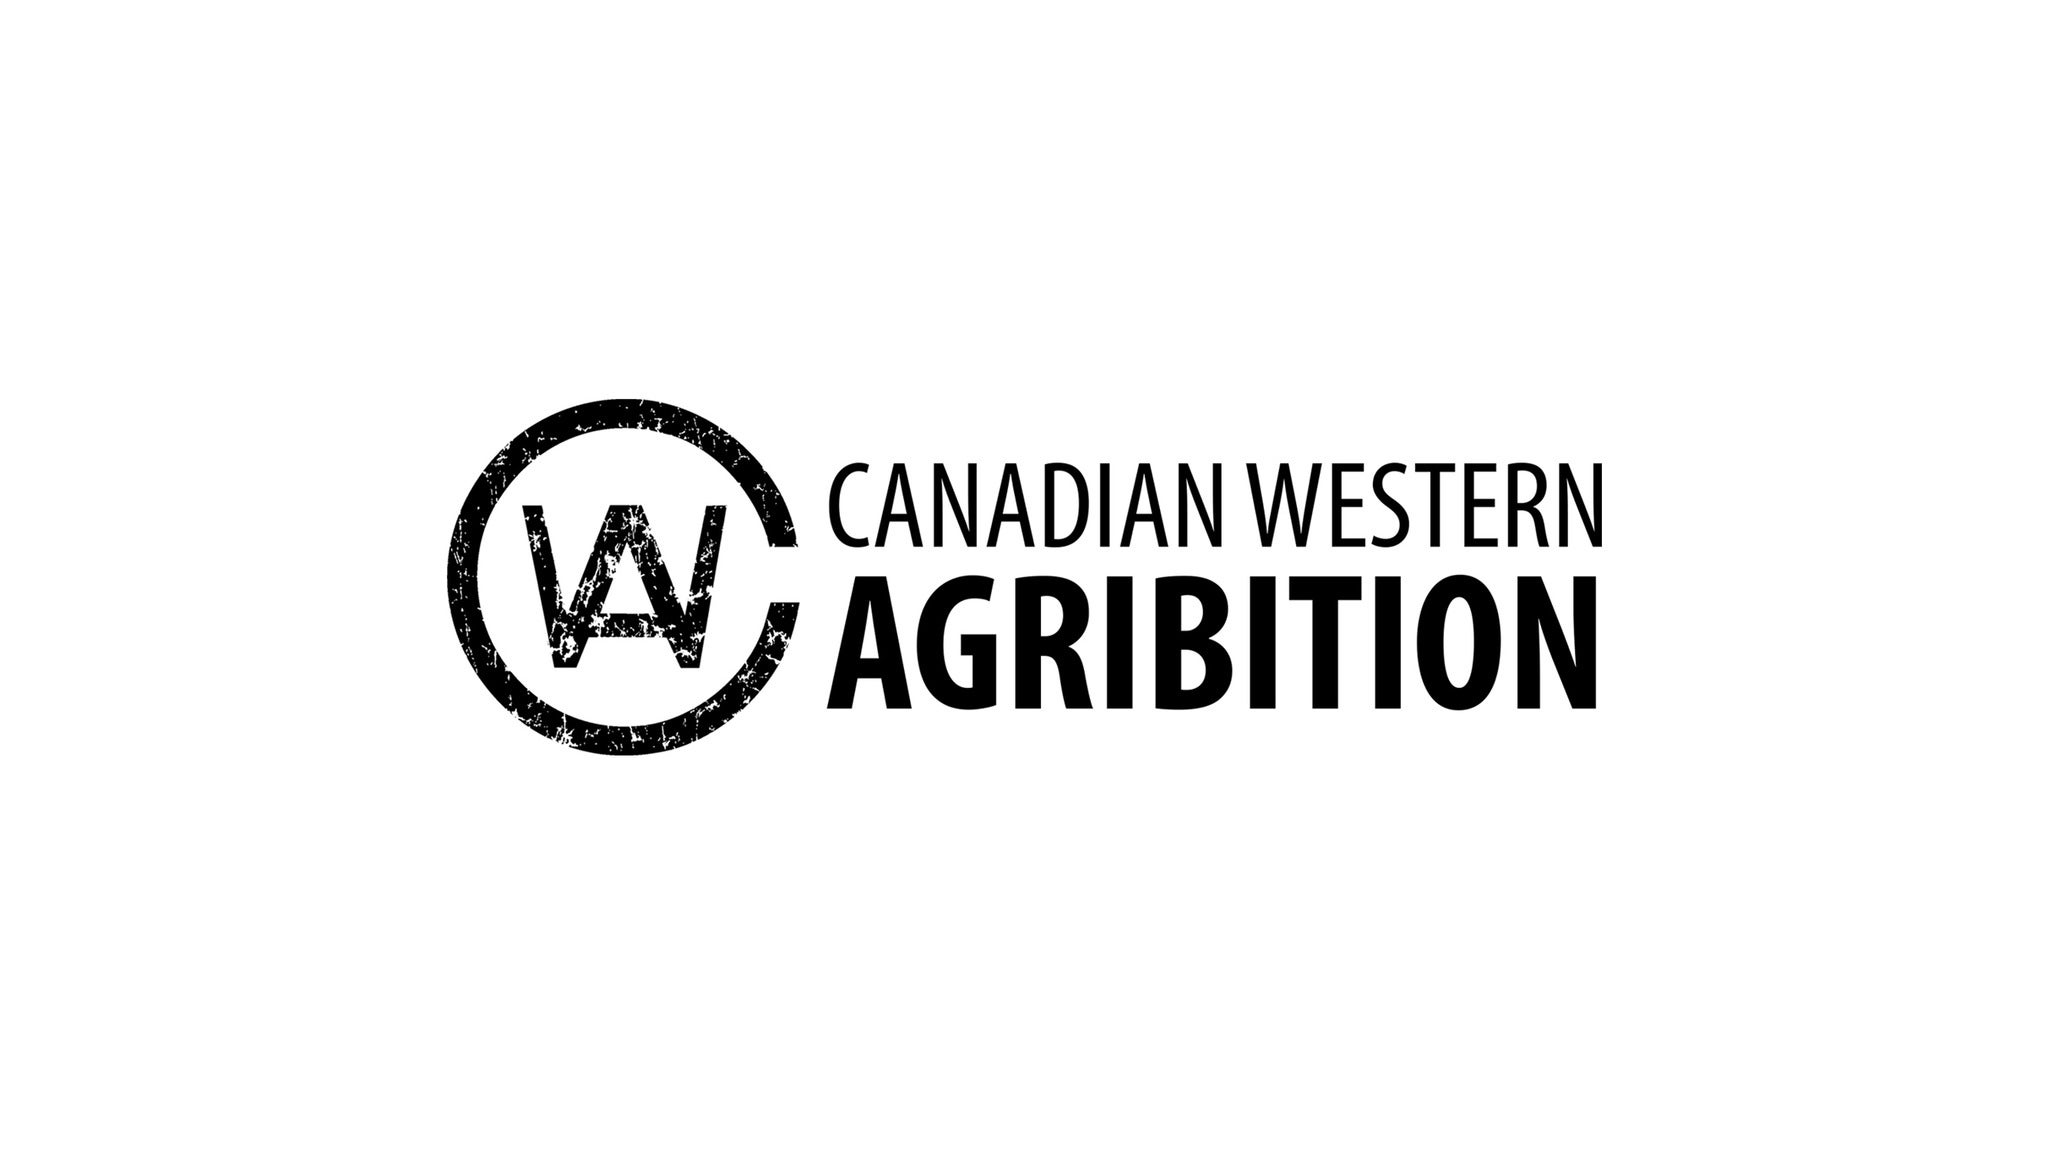 Canadian Western Agribition presale information on freepresalepasswords.com